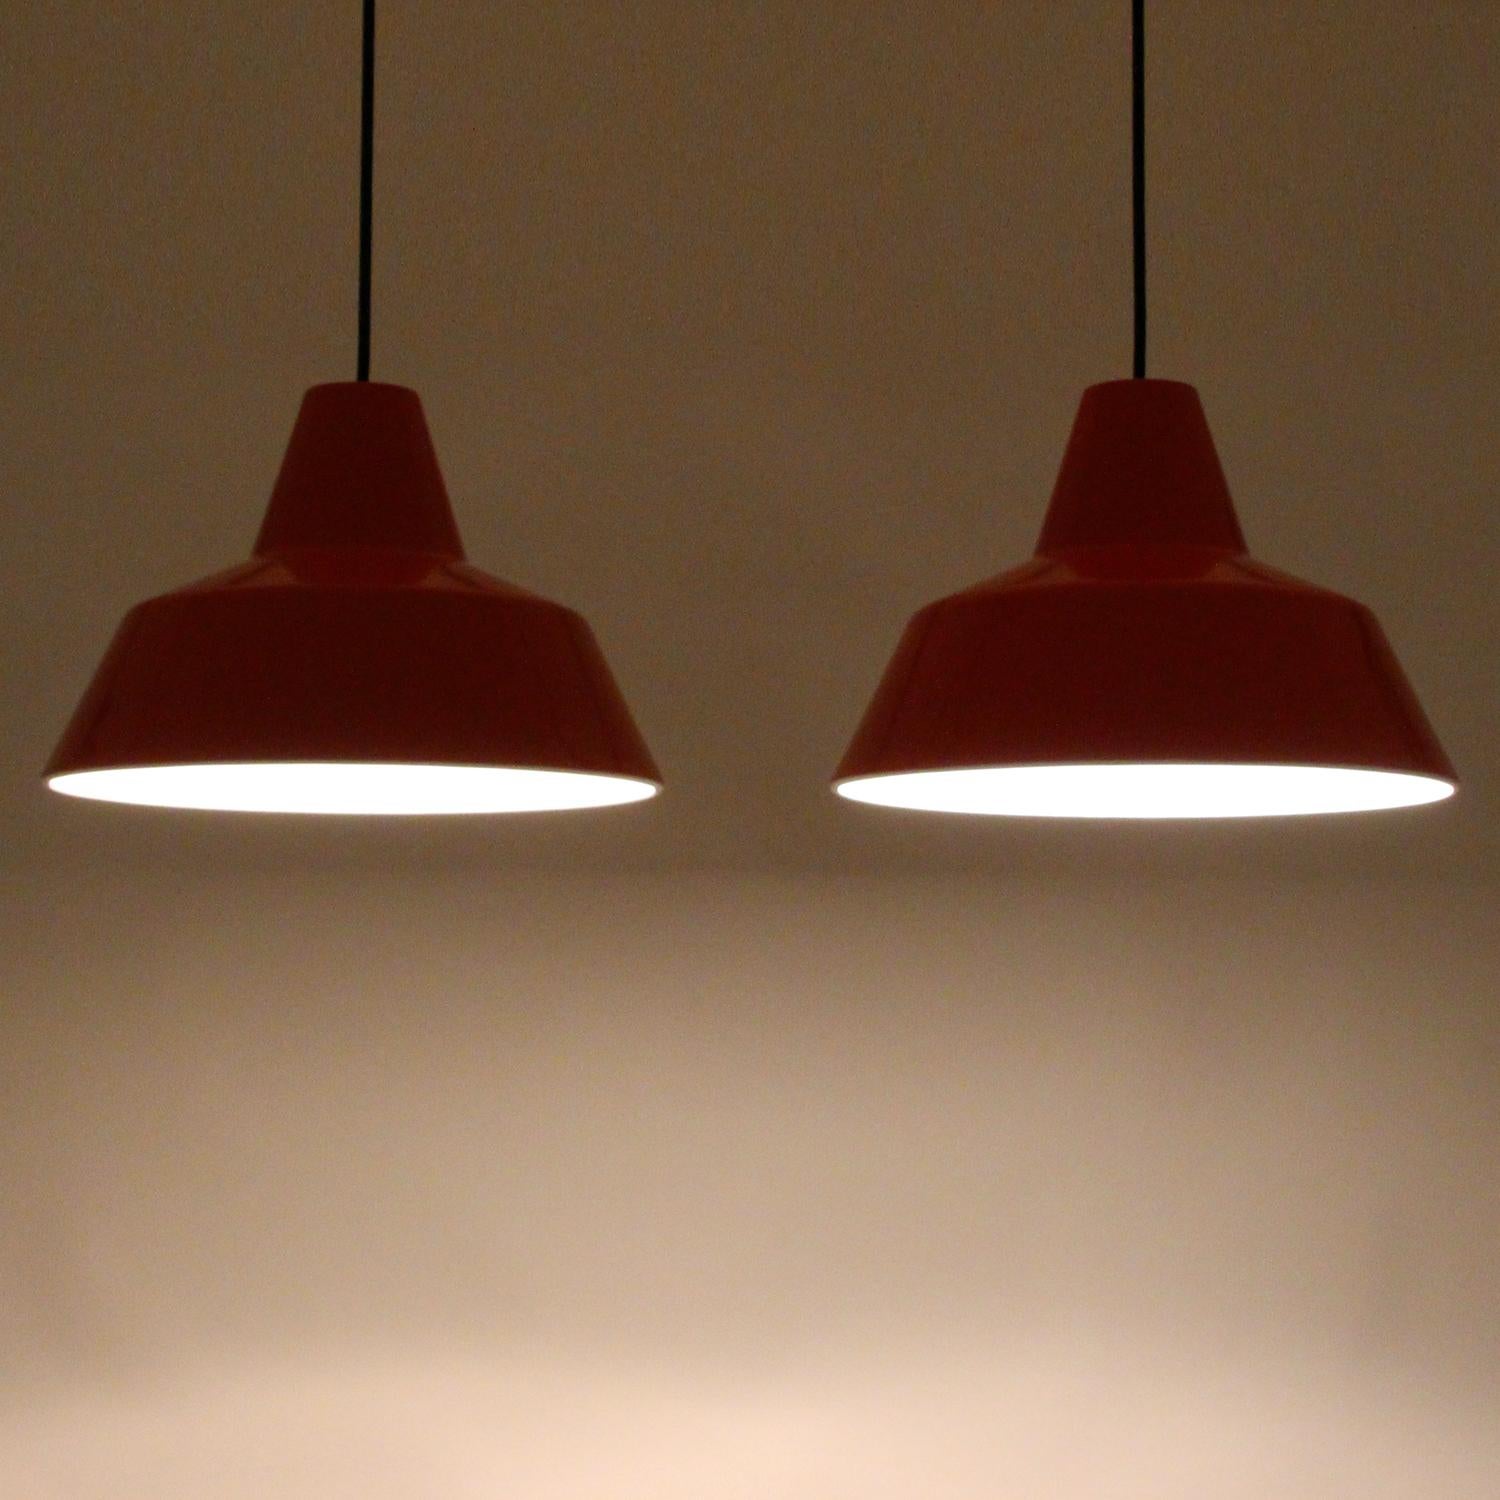 Enameled Enamel Pendants ‘Pair’ by Louis Poulsen 1960s Vintage Industrial Ceiling Lights